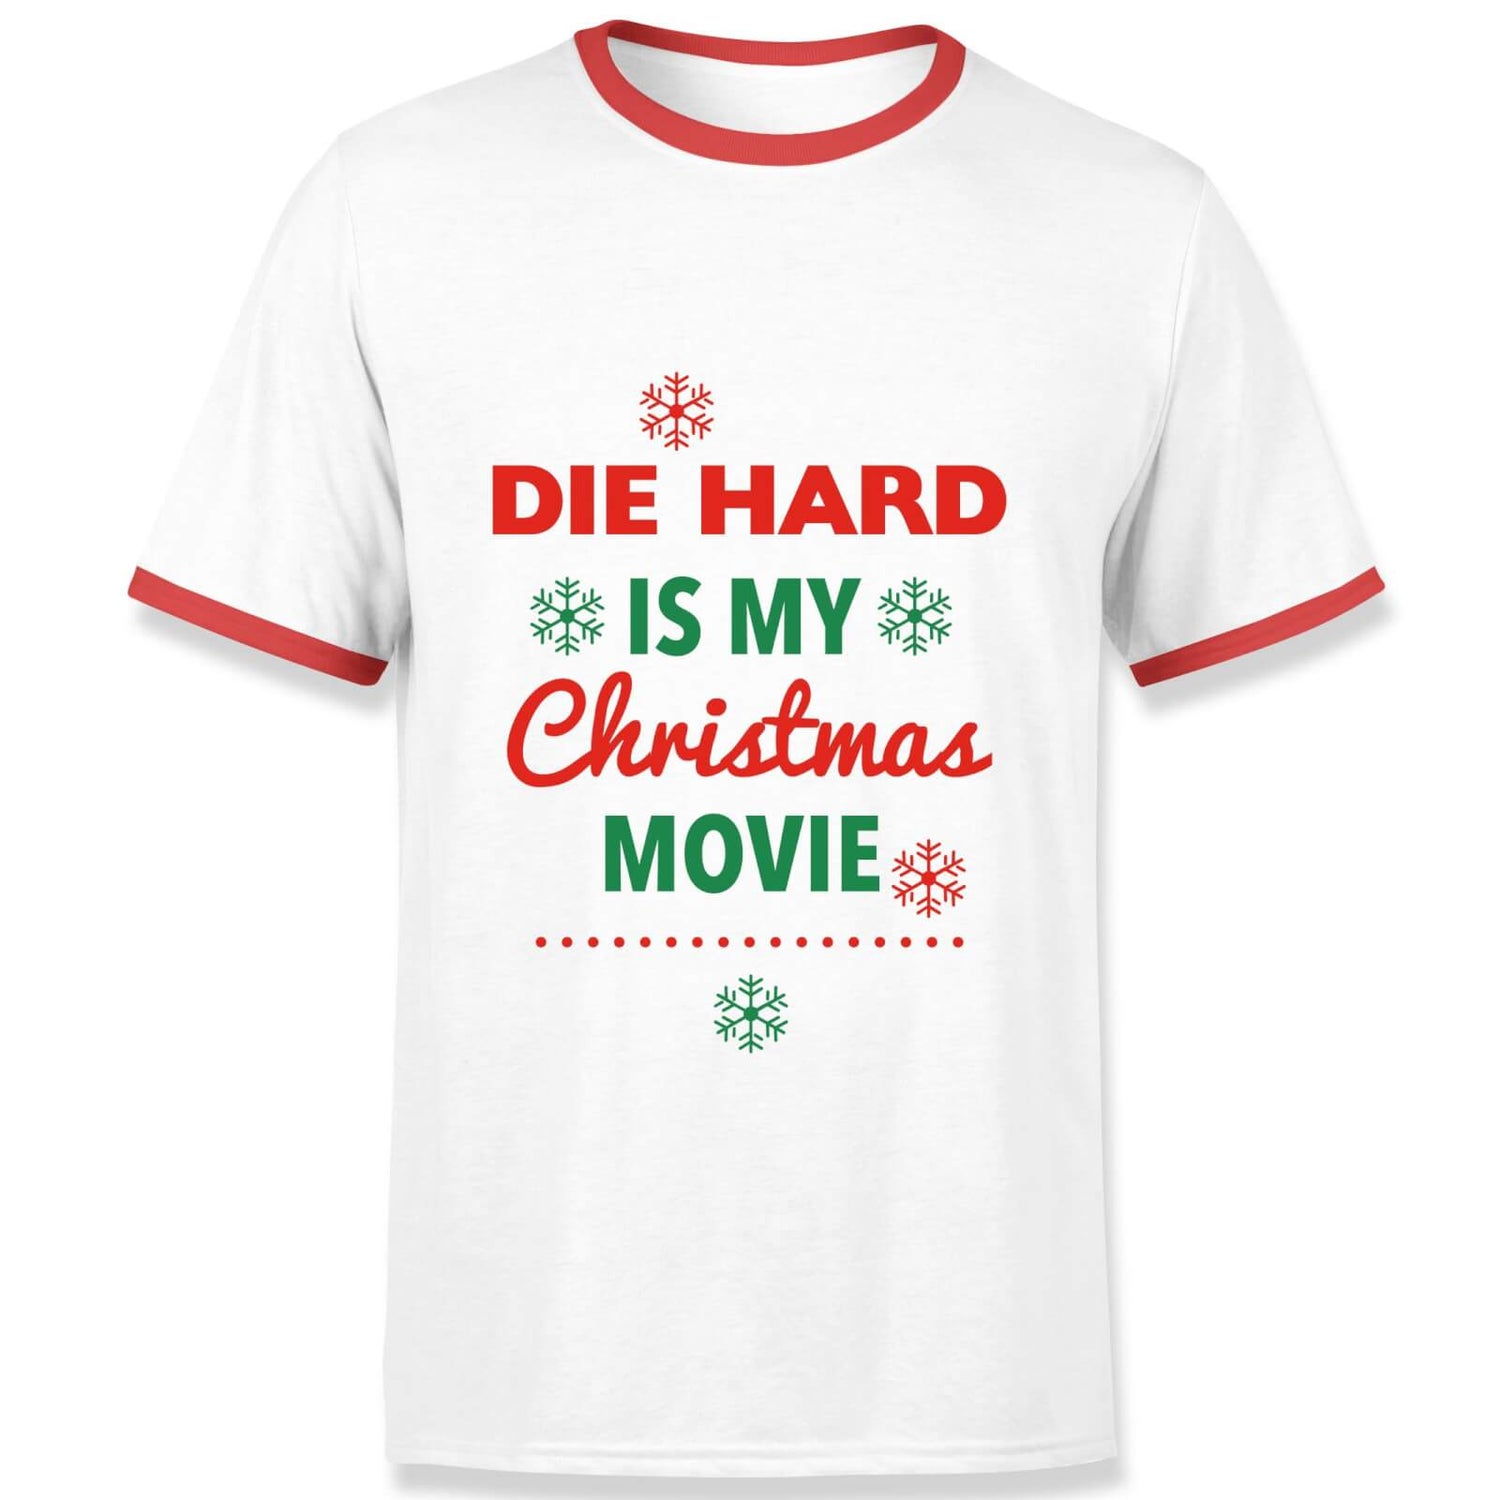 Die Hard Christmas Movie Men's Ringer T-Shirt - White/Red